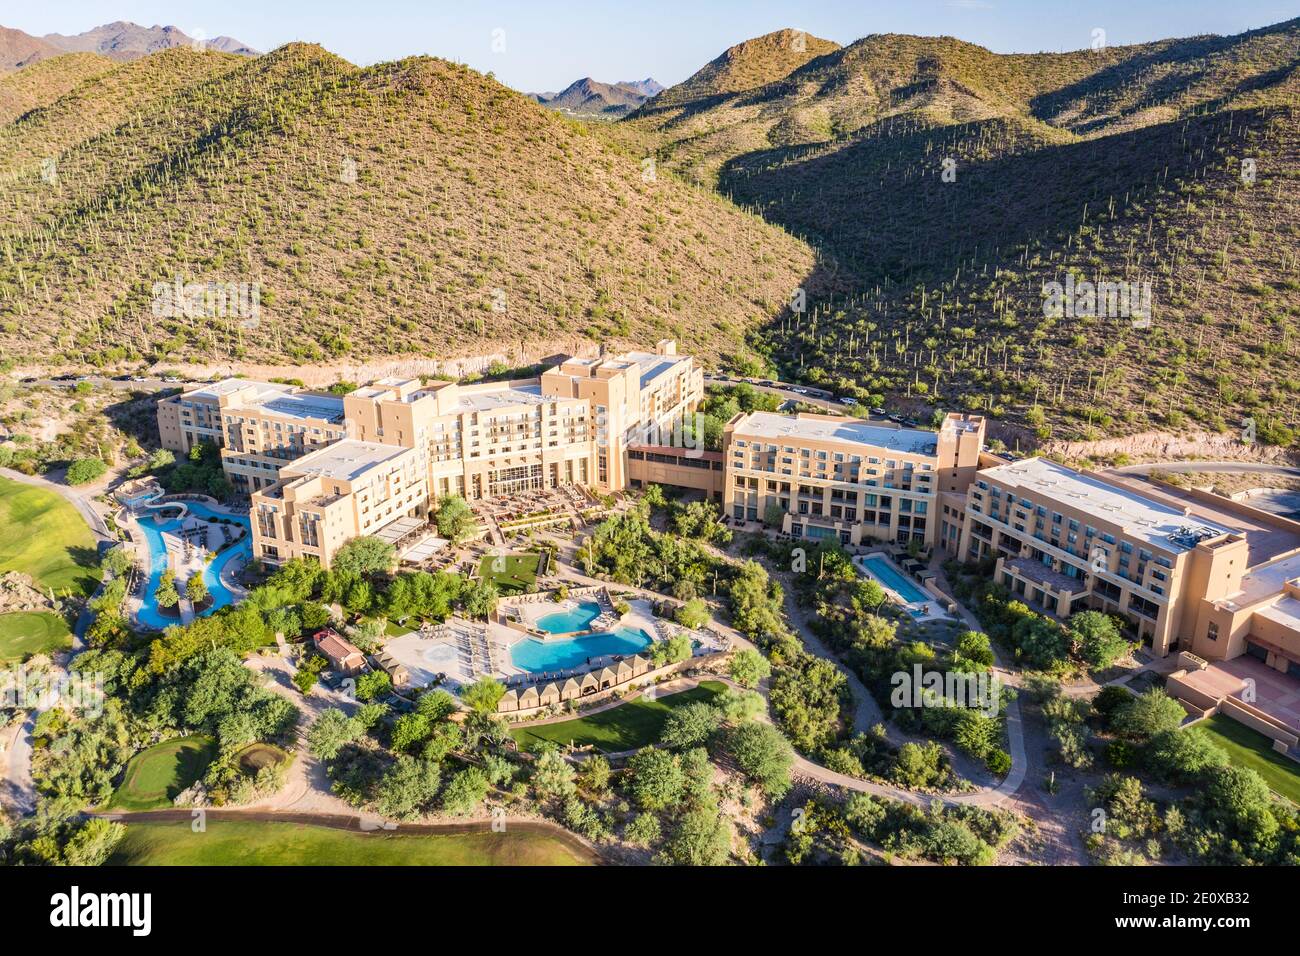 JW Marriott Starr Pass Resort Hotel, Tuscon, AZ, Stati Uniti Foto Stock